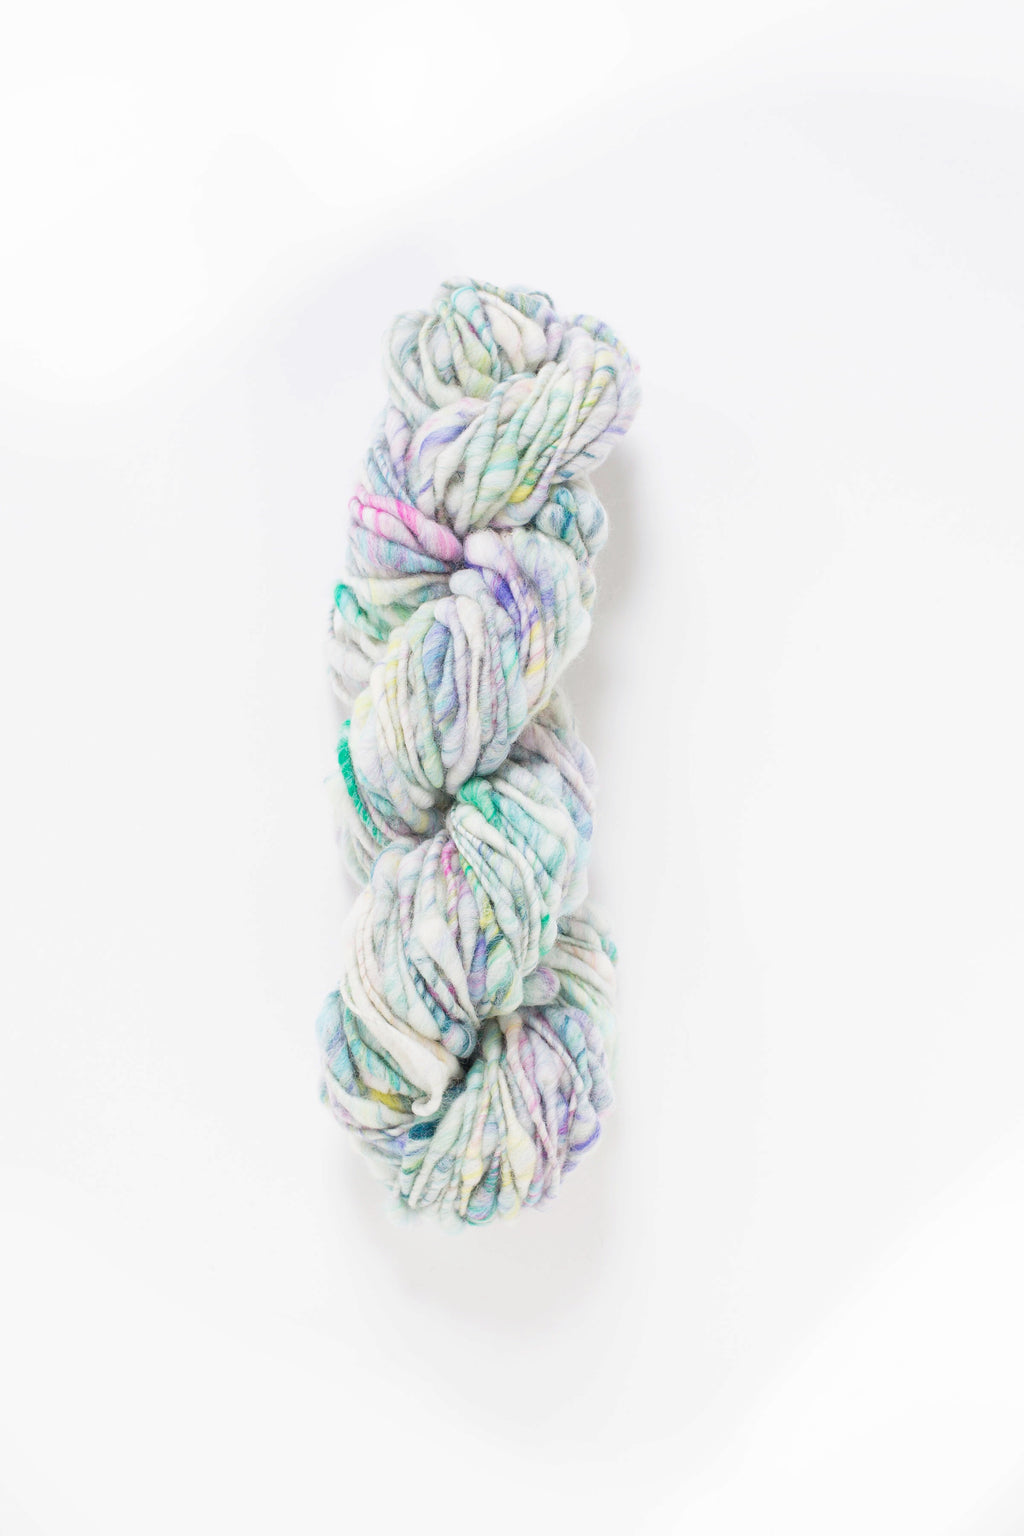 Cast Away Yarn hand knitting yarn - chunky bulky handspun yarn in Chasing Rainbows